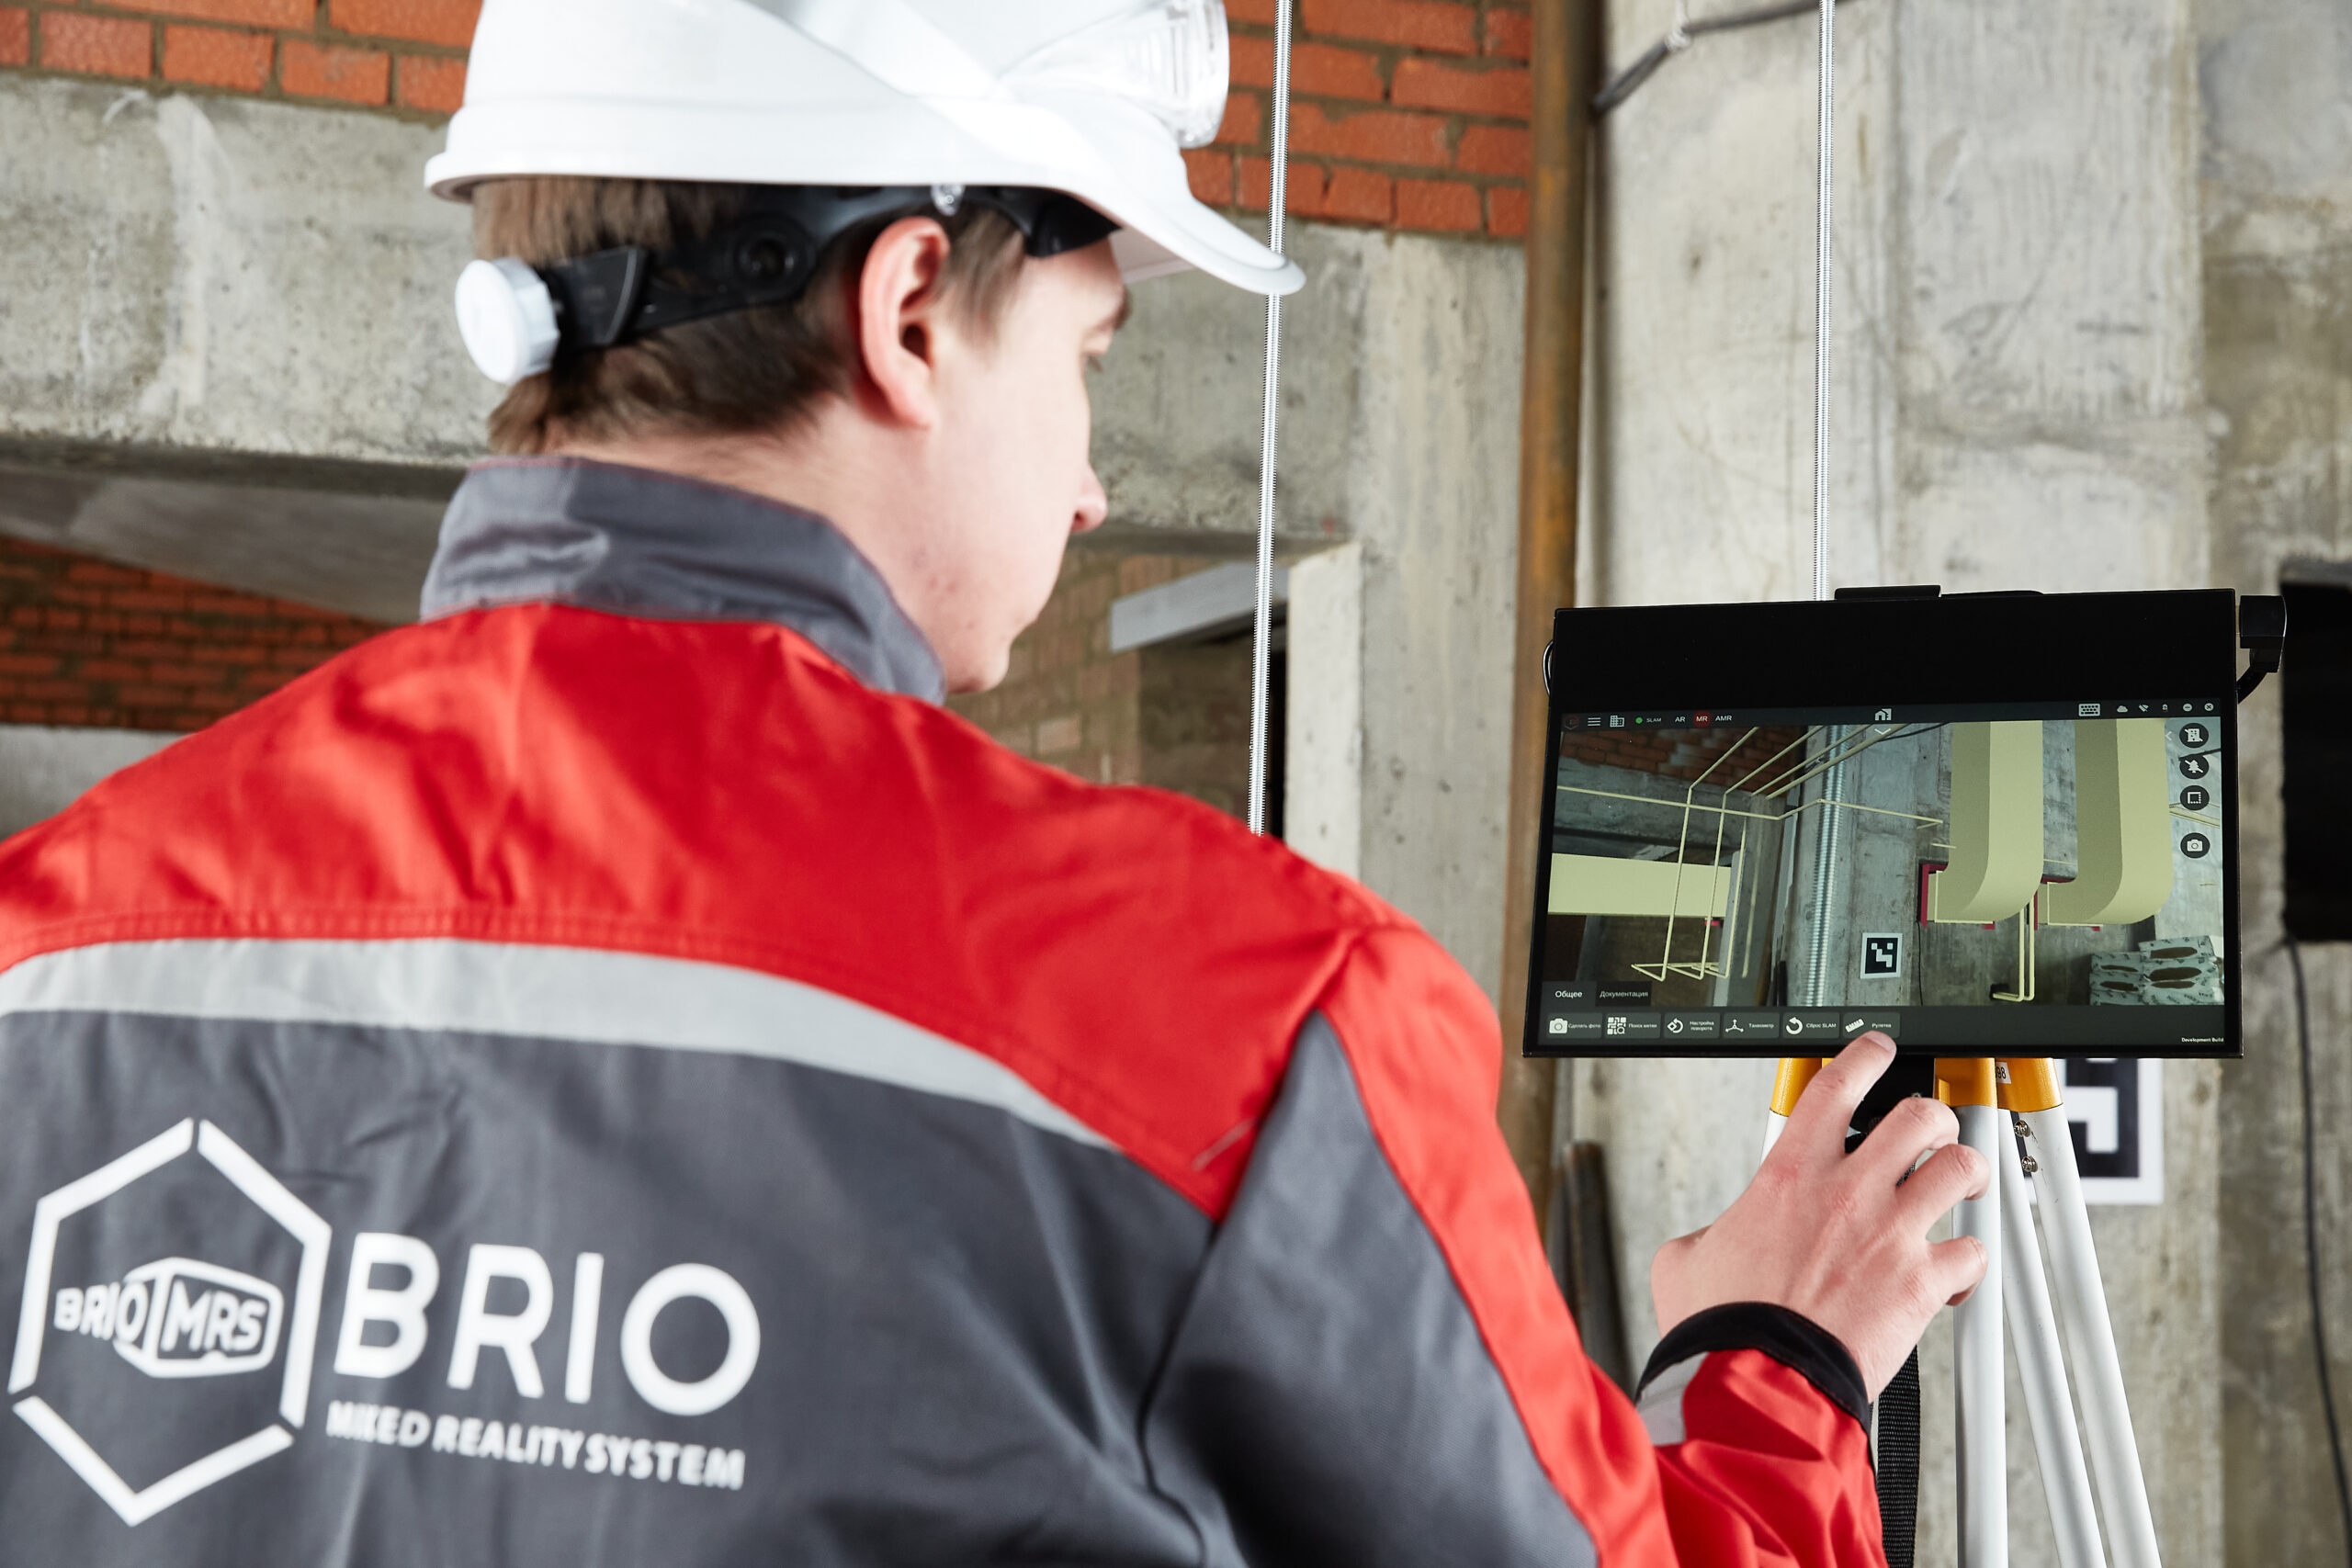 Команда BRIO MRS при поддержке Корпорации МСП выпустила новую версию специализированного MR-устройства и готова объявить официальный запуск продаж